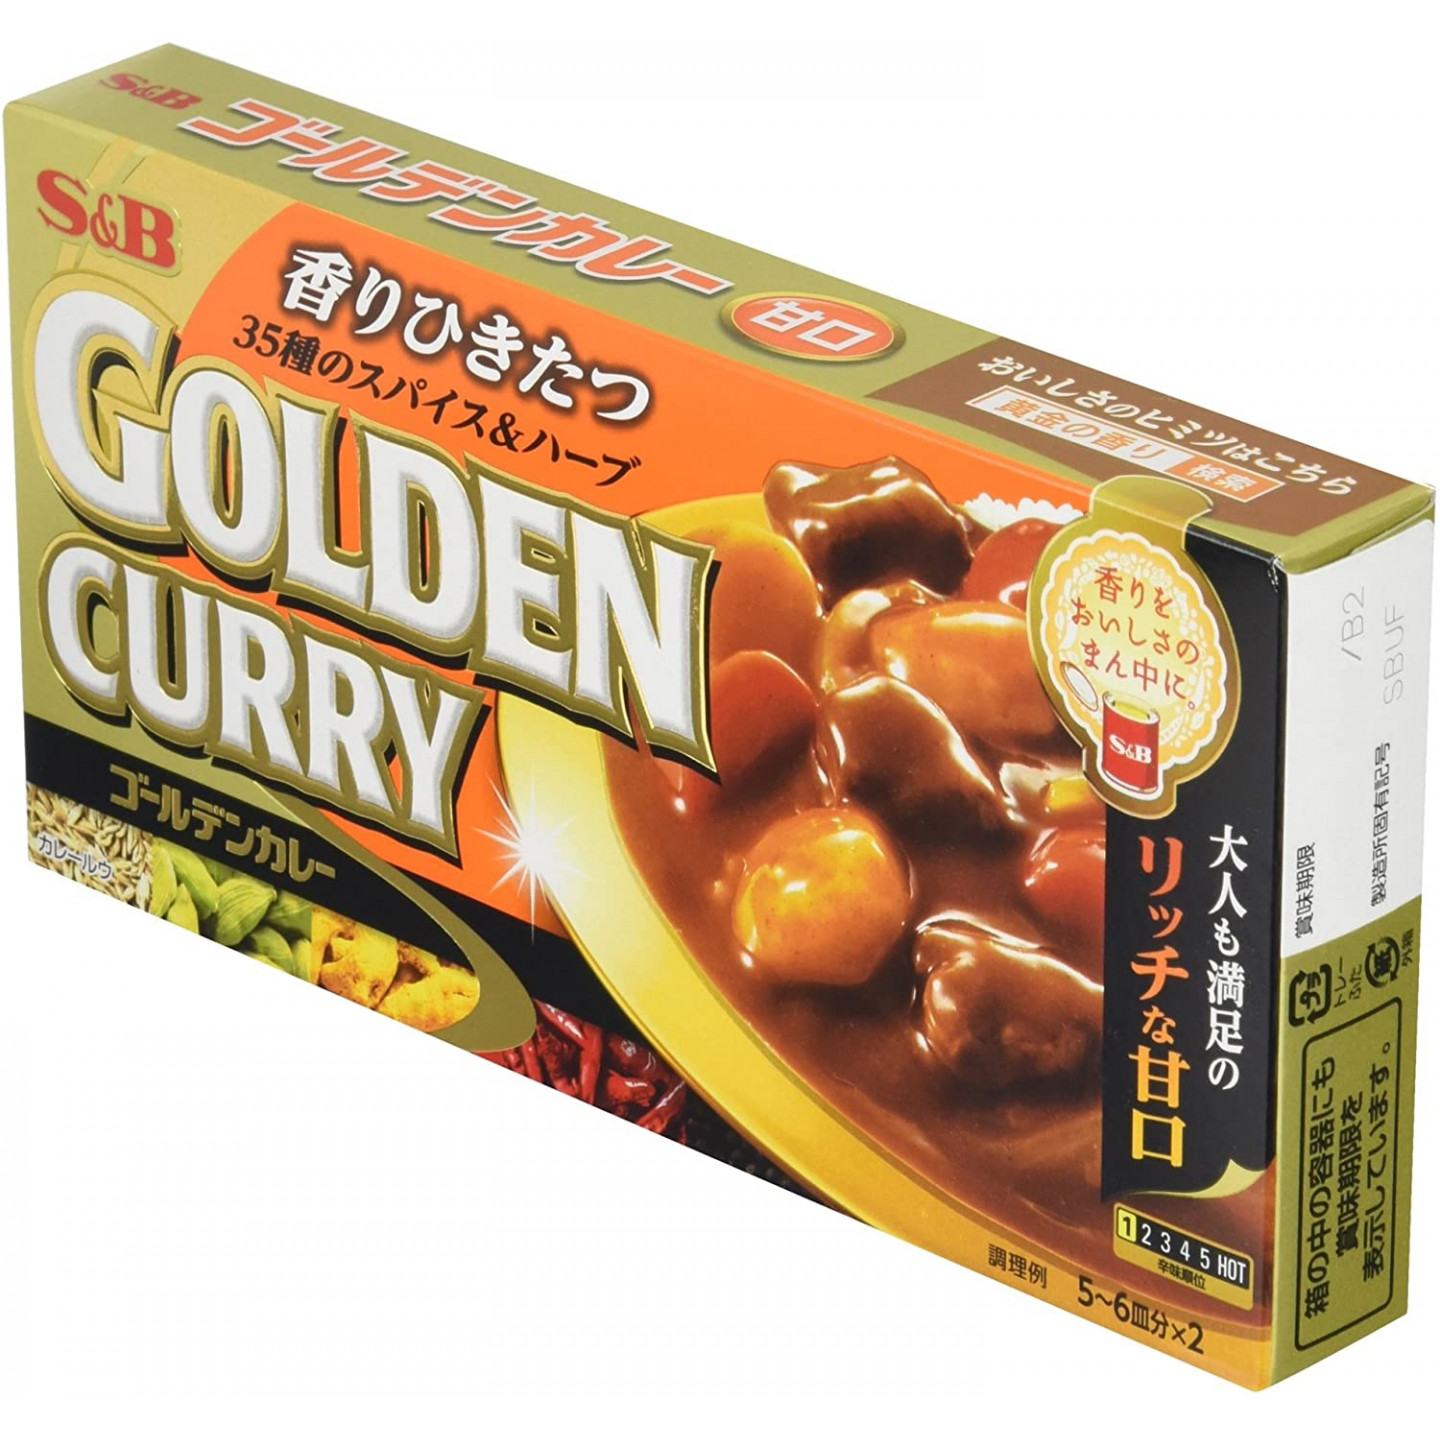 golden curry, curry japonais doux